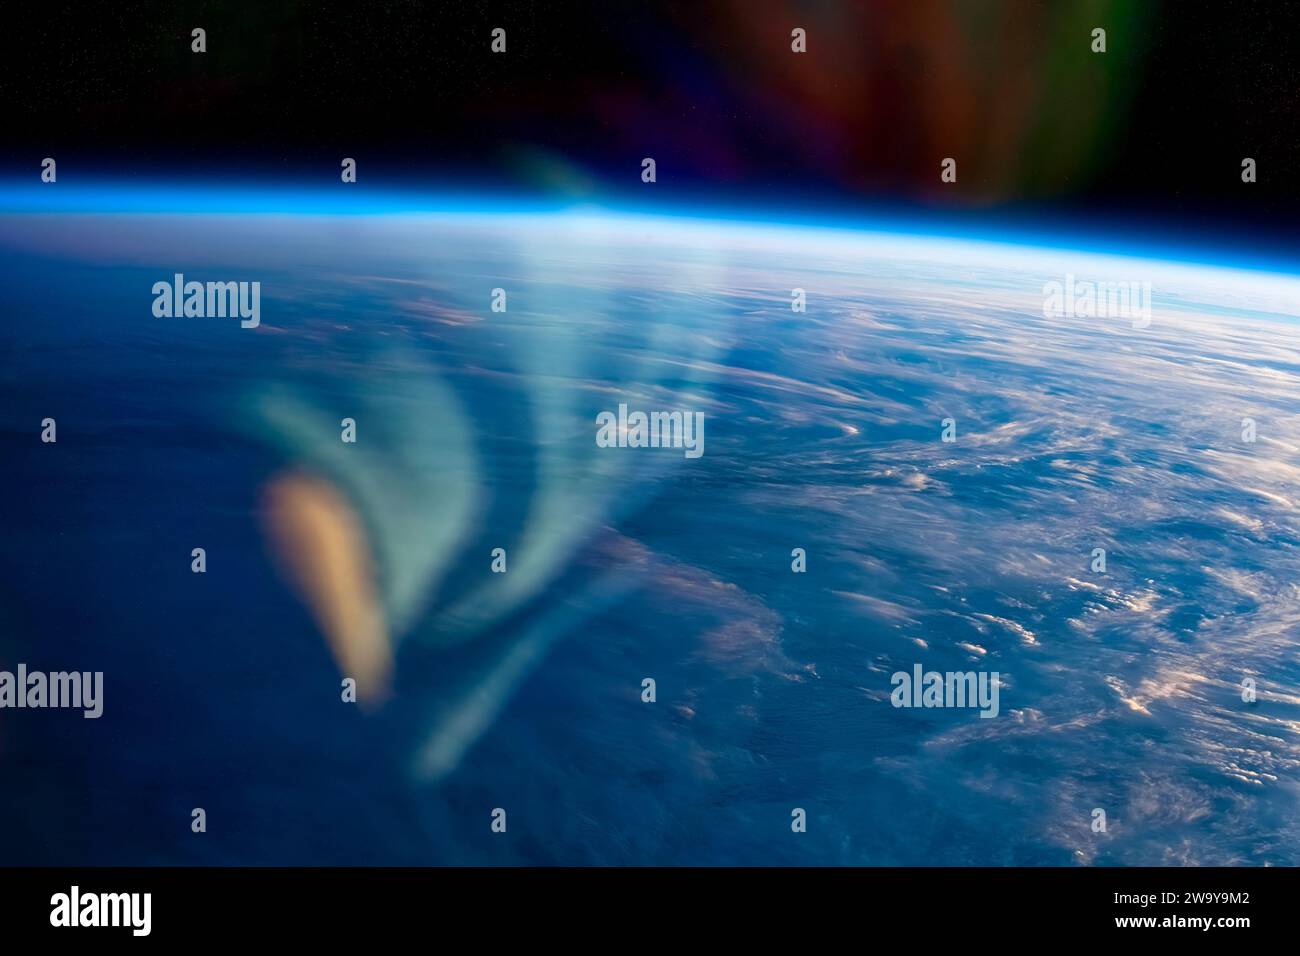 Linsenfackel und Planet Erde von der ISS. Digitale Verbesserung eines NASA-Bildes. Stockfoto